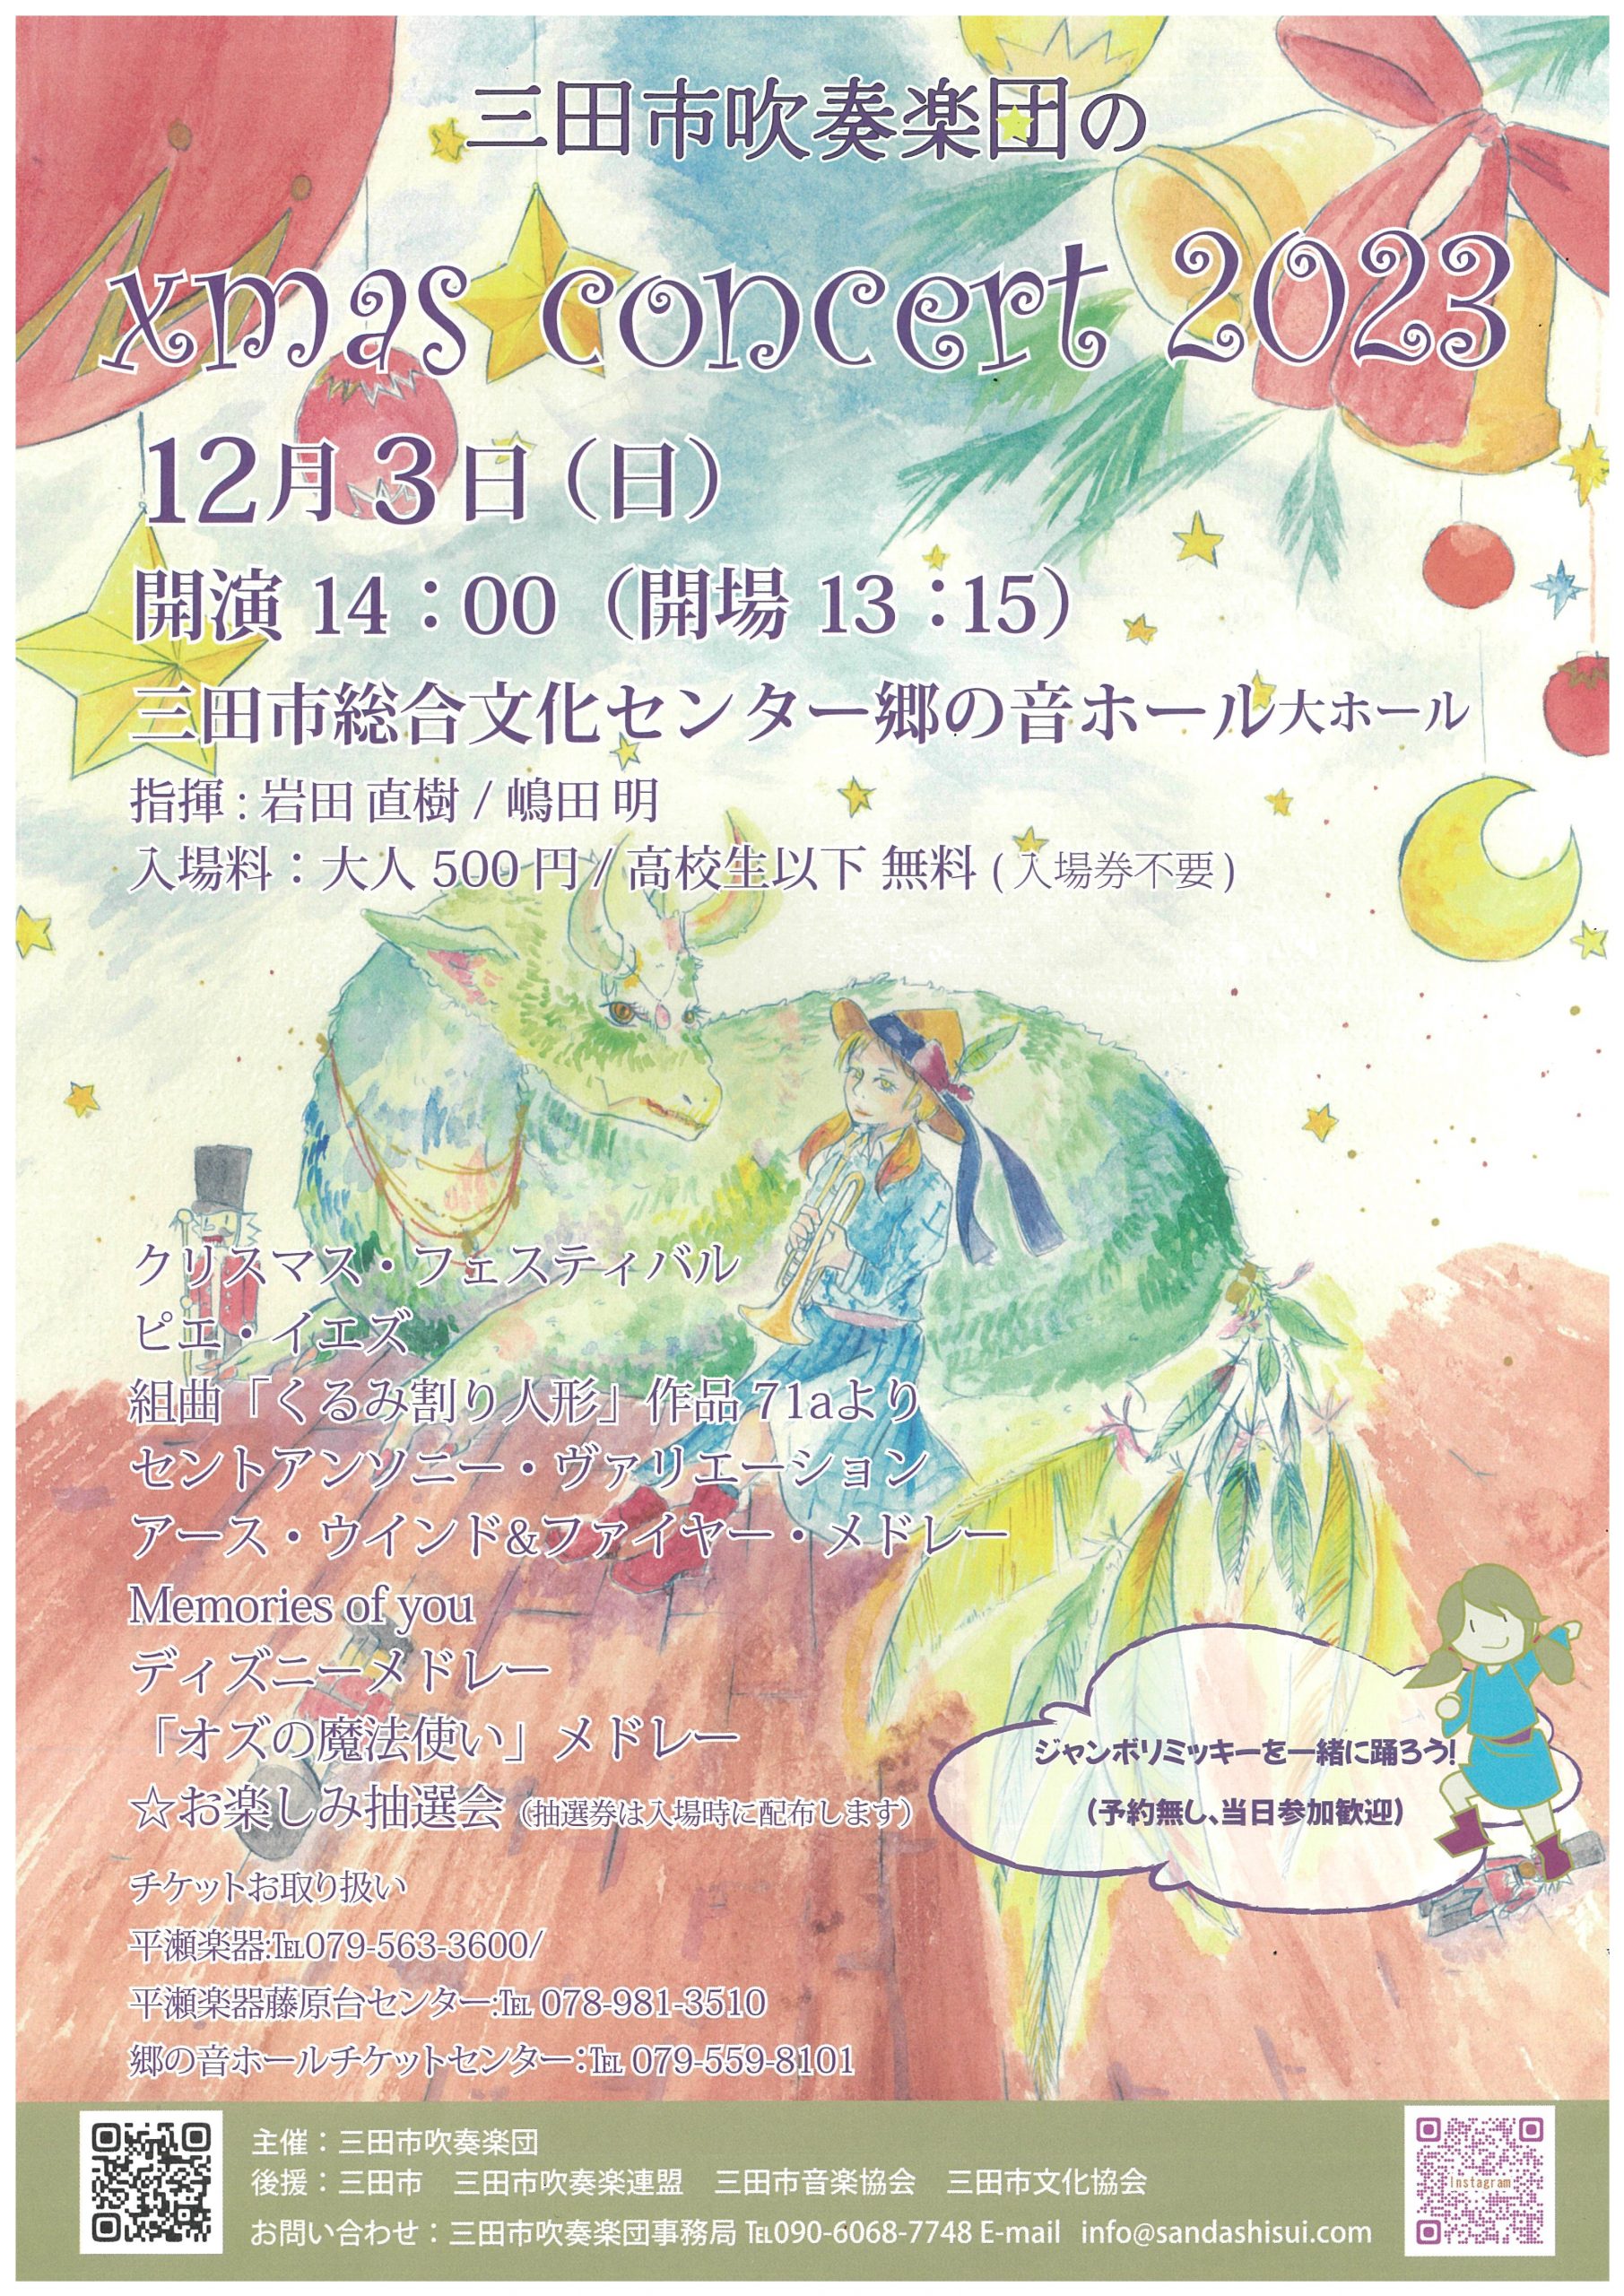 三田市吹奏楽団のクリスマスコンサート